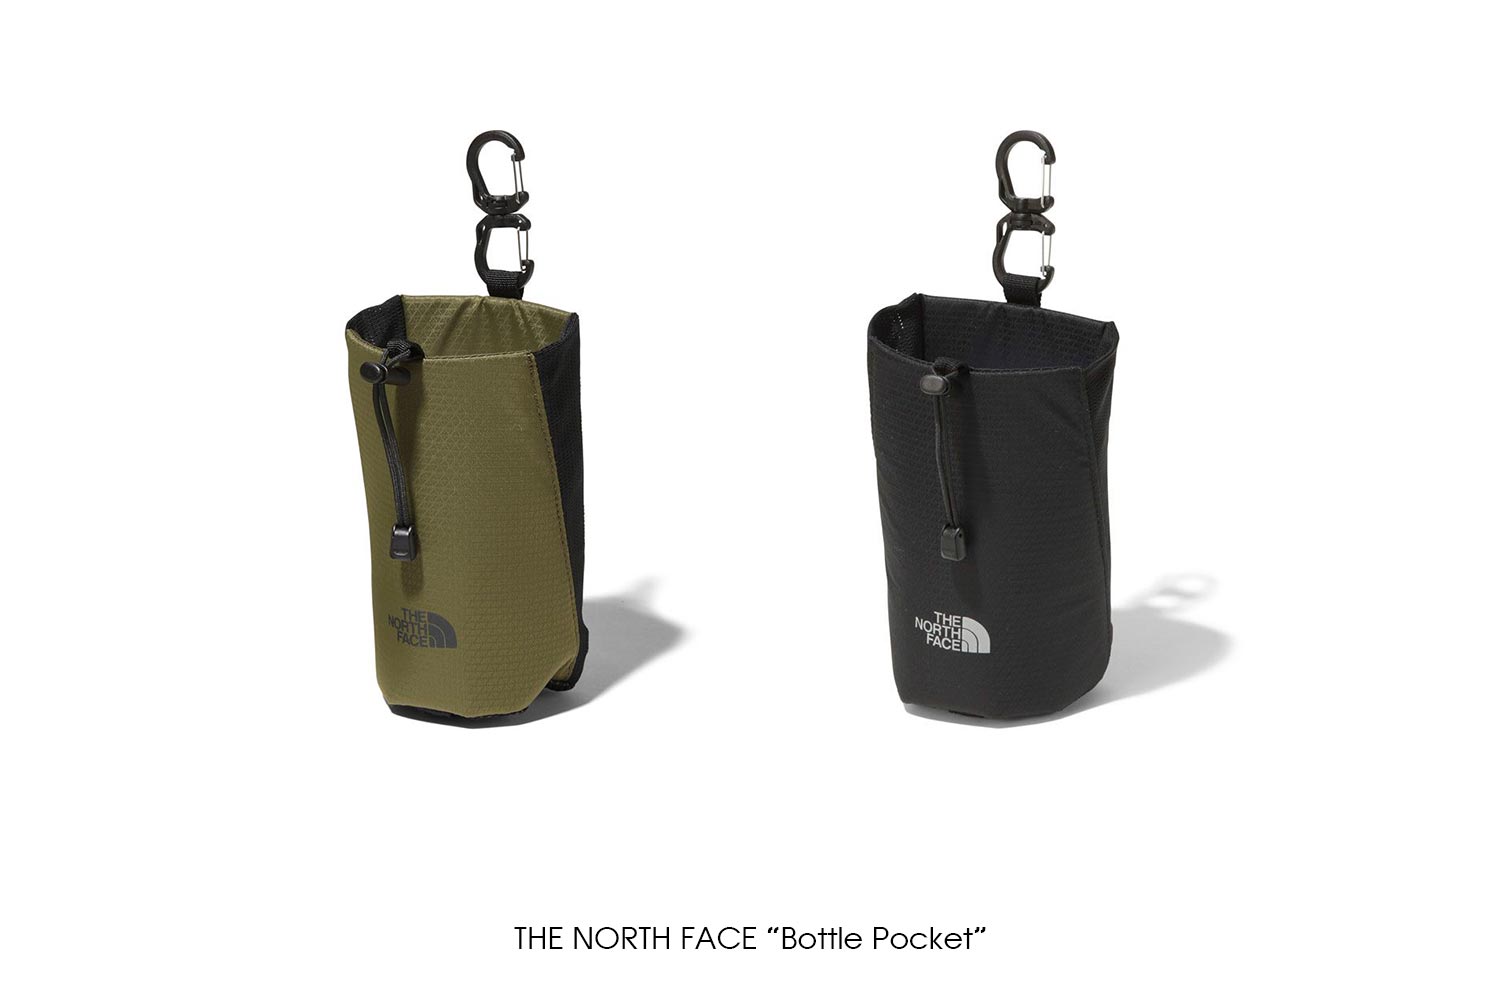 THE NORTH FACE "Bottle Pocket"